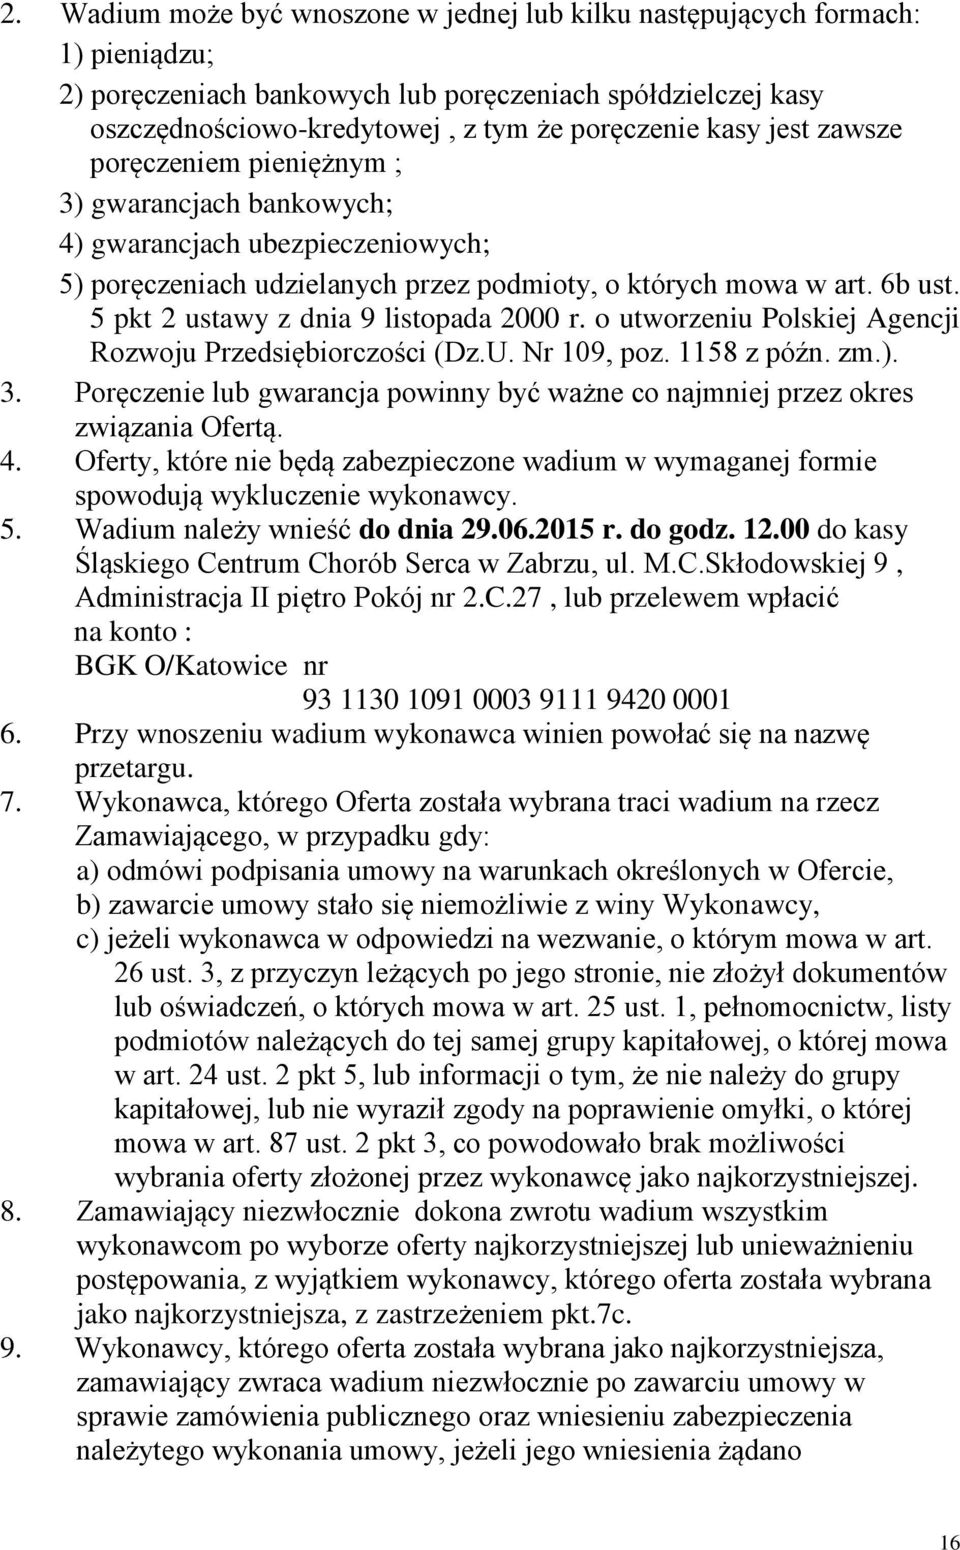 5 pkt 2 ustawy z dnia 9 listopada 2000 r. o utworzeniu Polskiej Agencji Rozwoju Przedsiębiorczości (Dz.U. Nr 109, poz. 1158 z późn. zm.). 3.